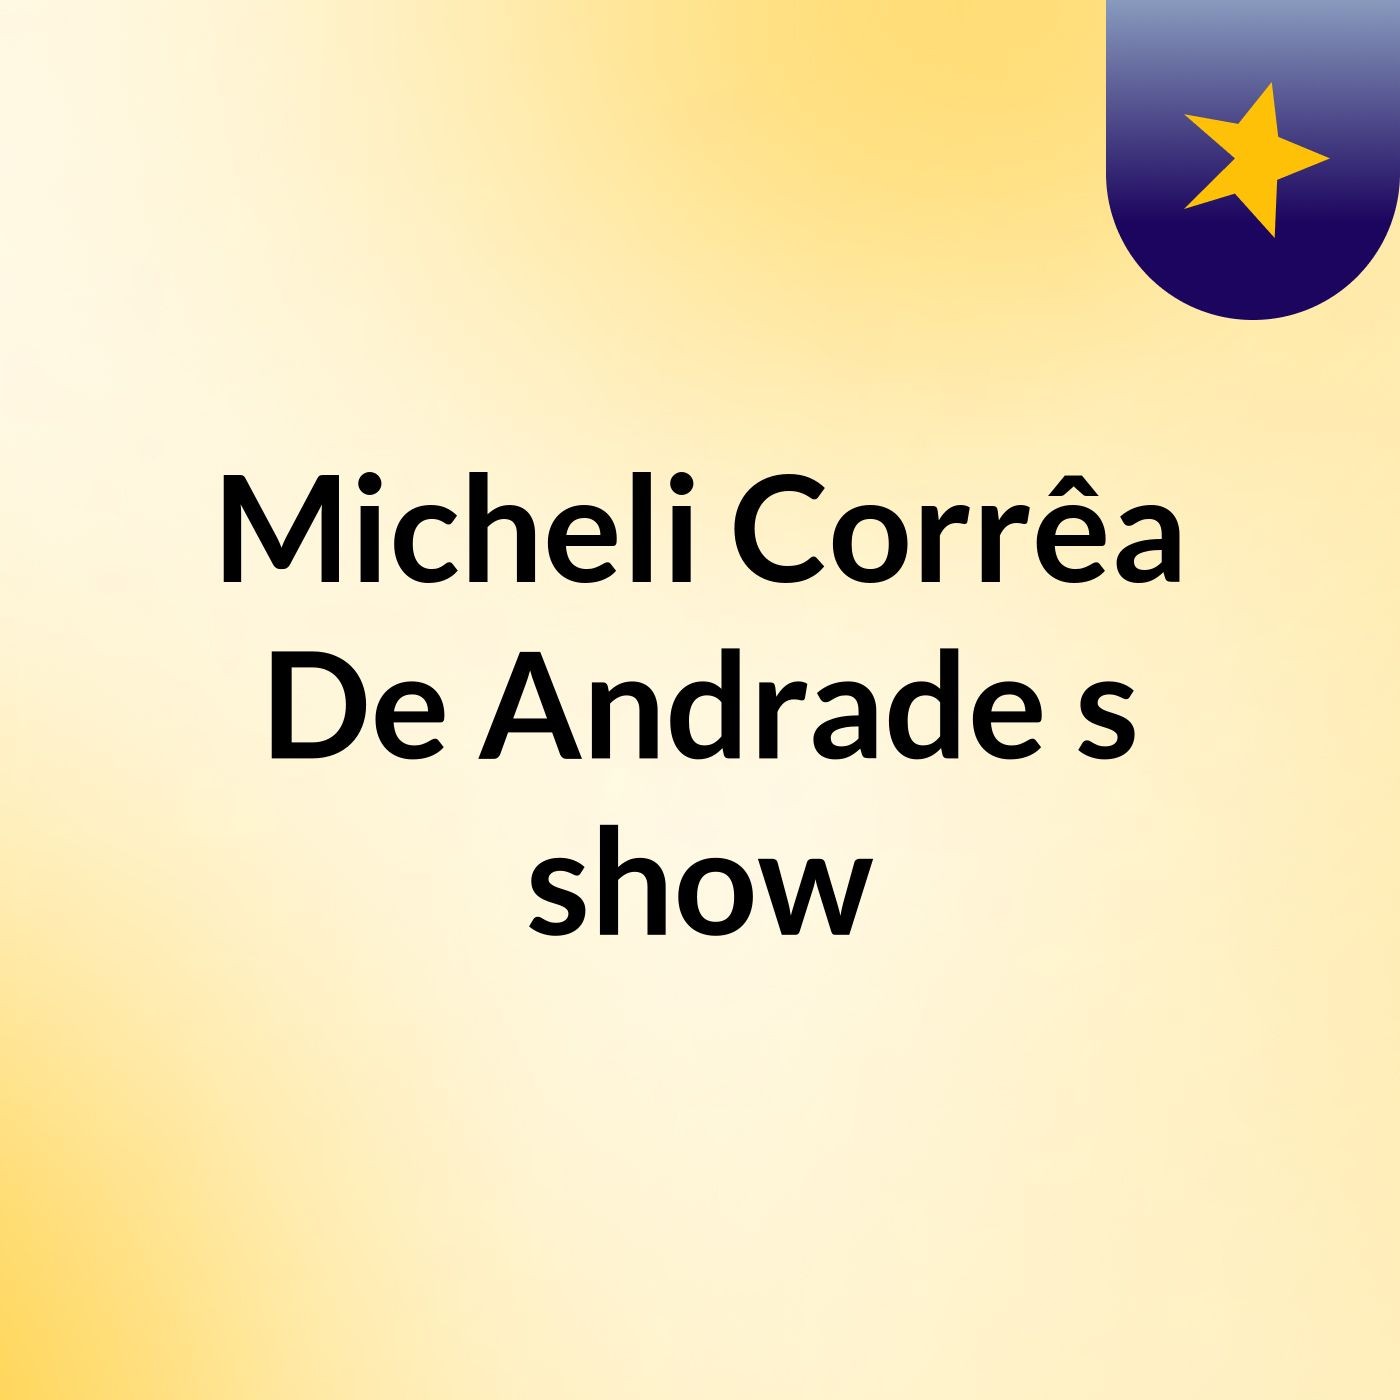 Micheli Corrêa De Andrade's show